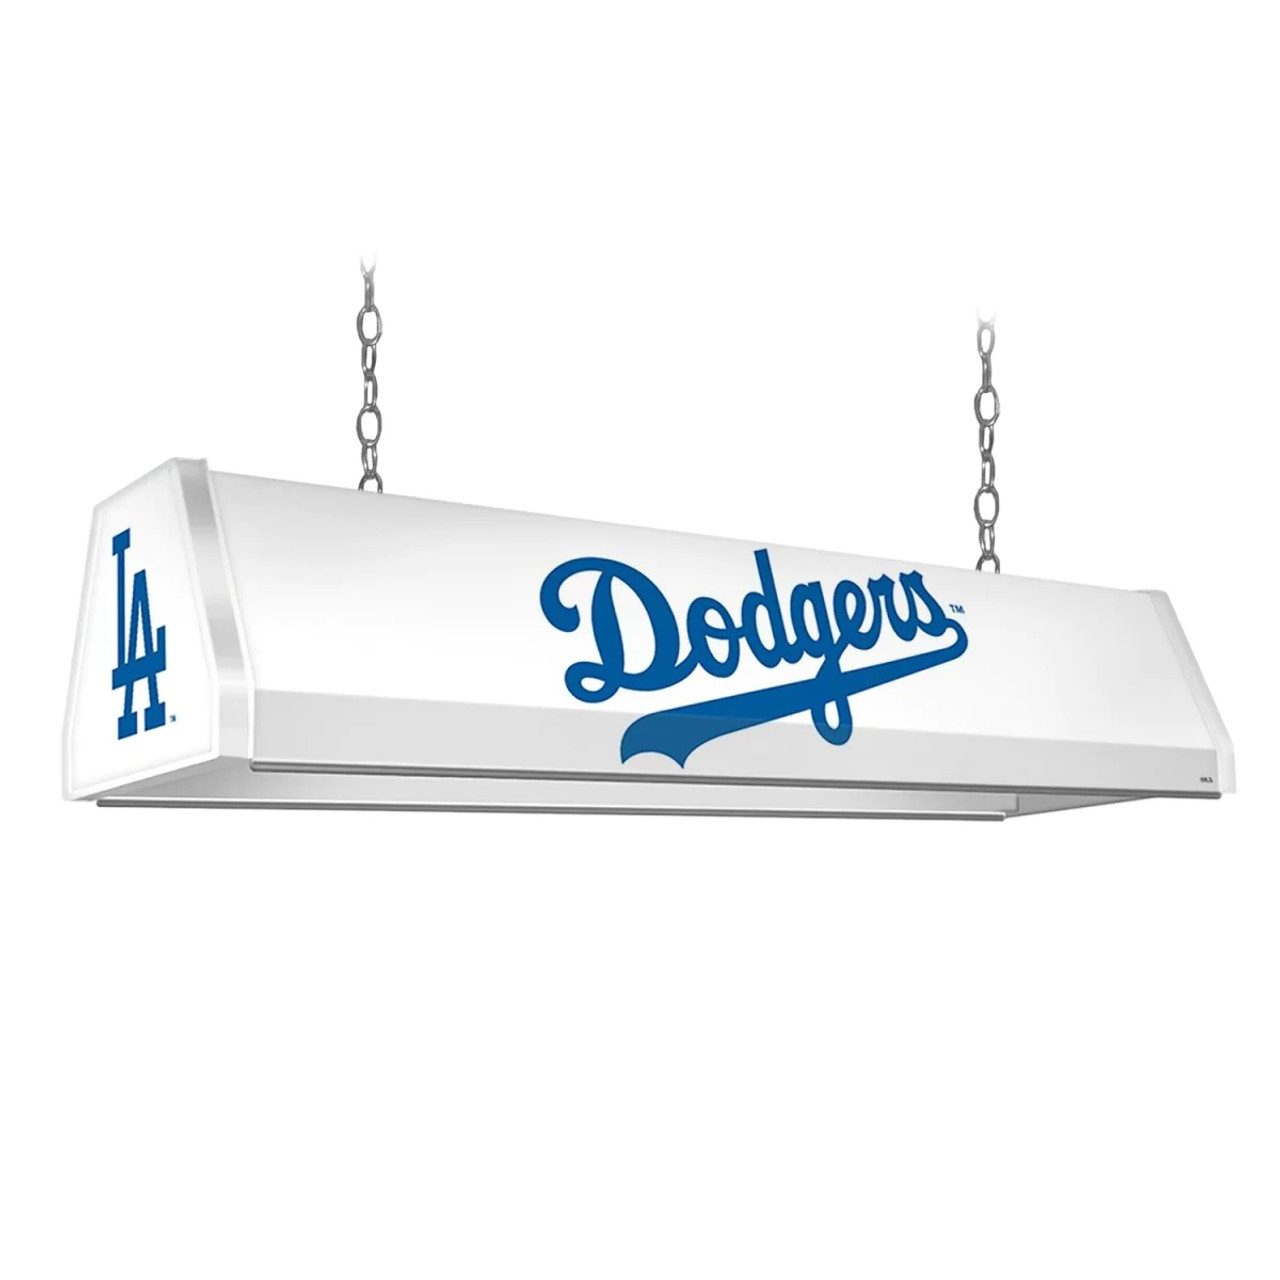 MBDODGERS-310-01B, LAD, LA, Los Angeles, Dodgers,  Standard, Billiard, Pool, Table, Light, Lamp, "B" Version, MLB, The Fan-Brand, 704384965947